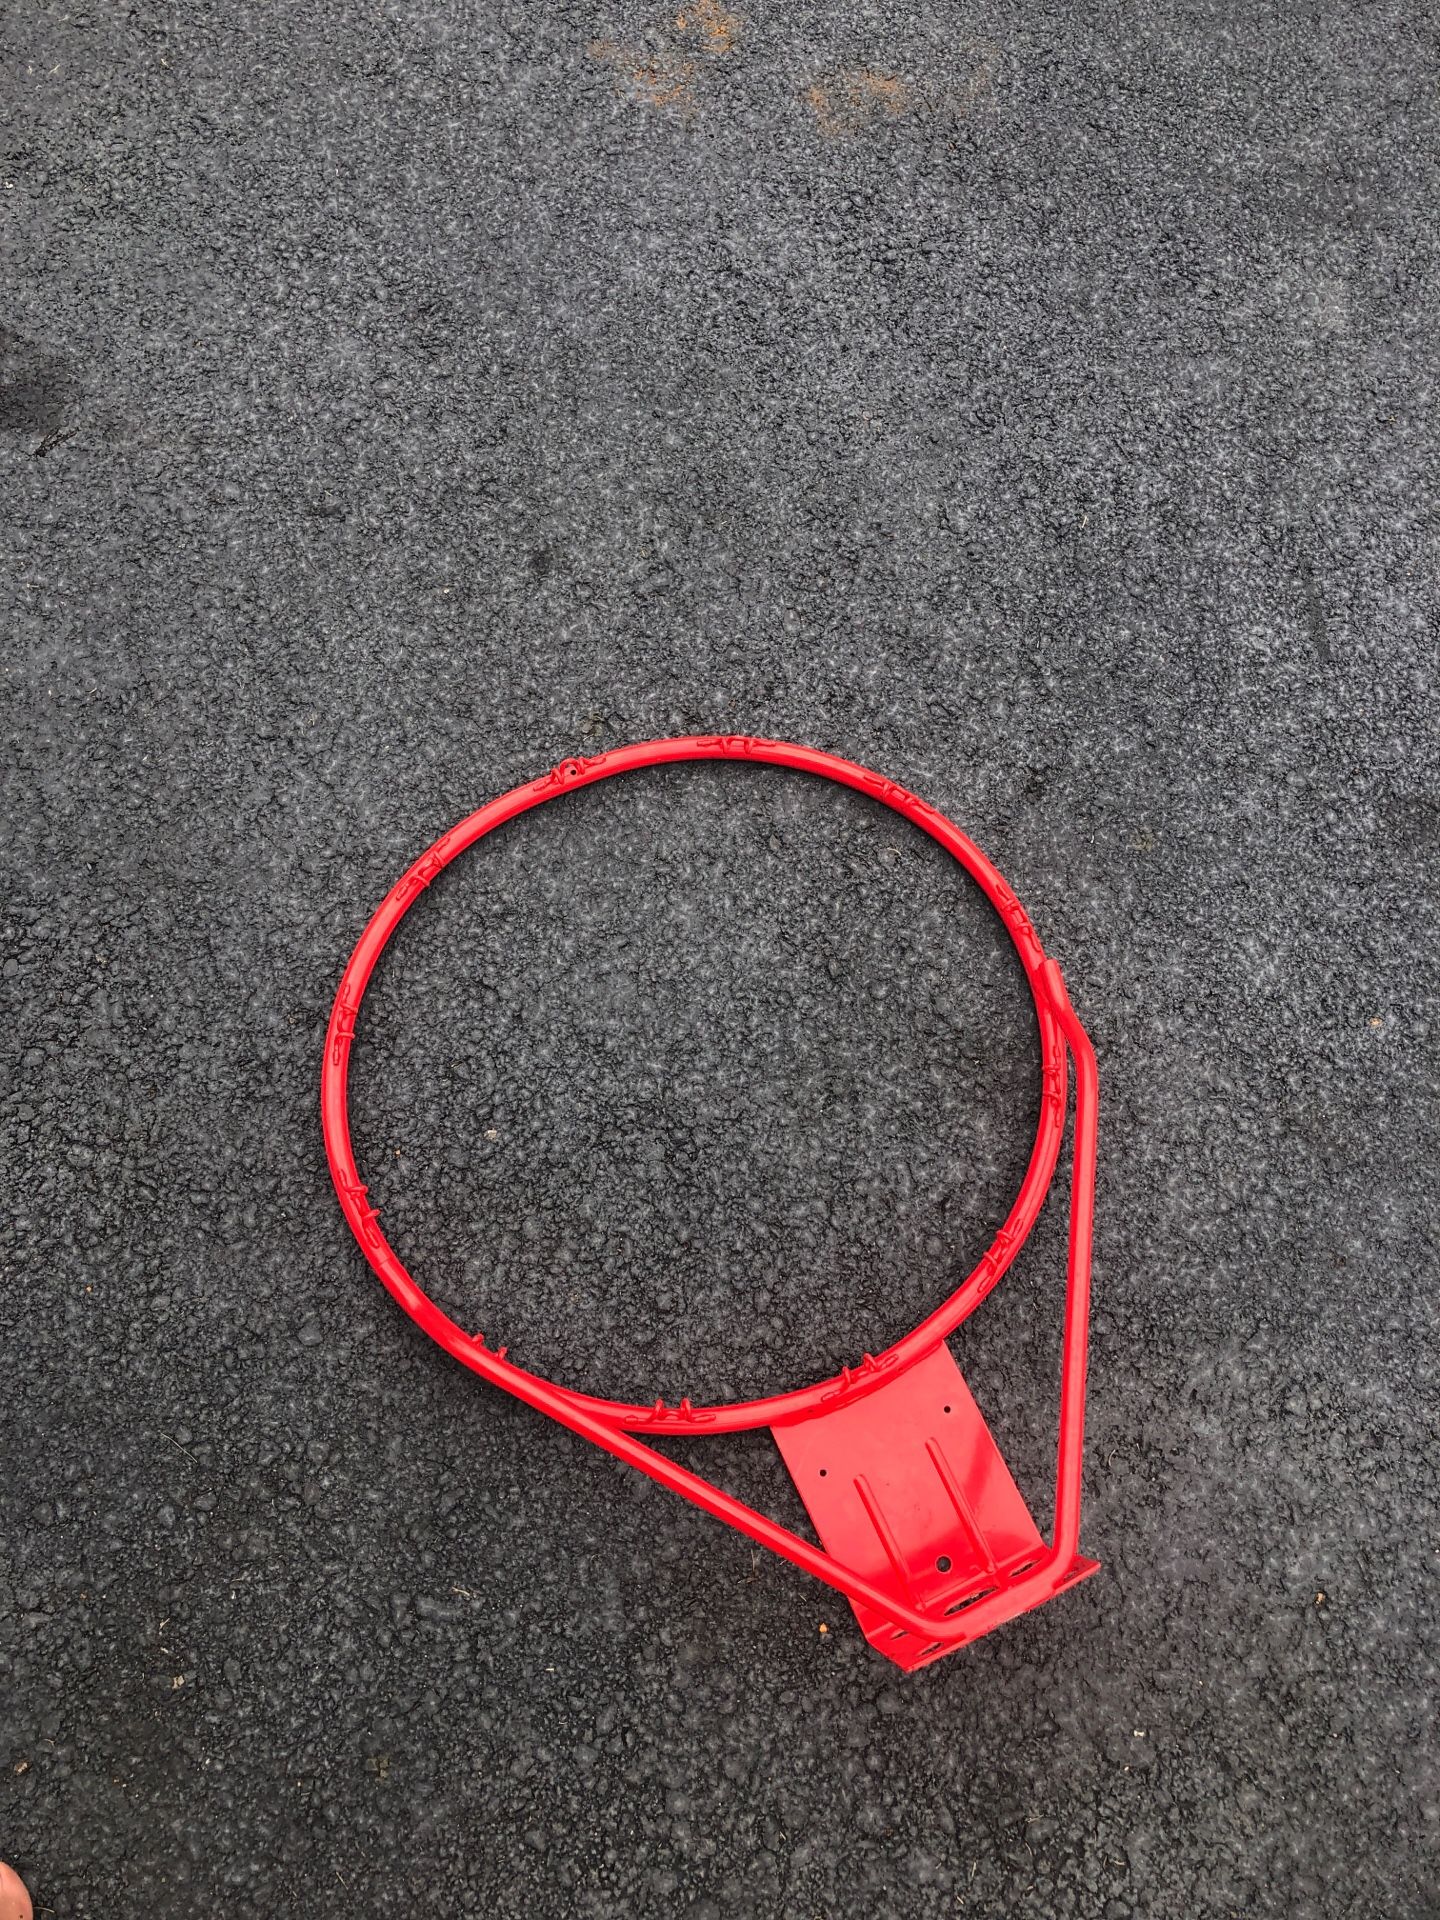 —->> Basketball hoop L👀K!!!!